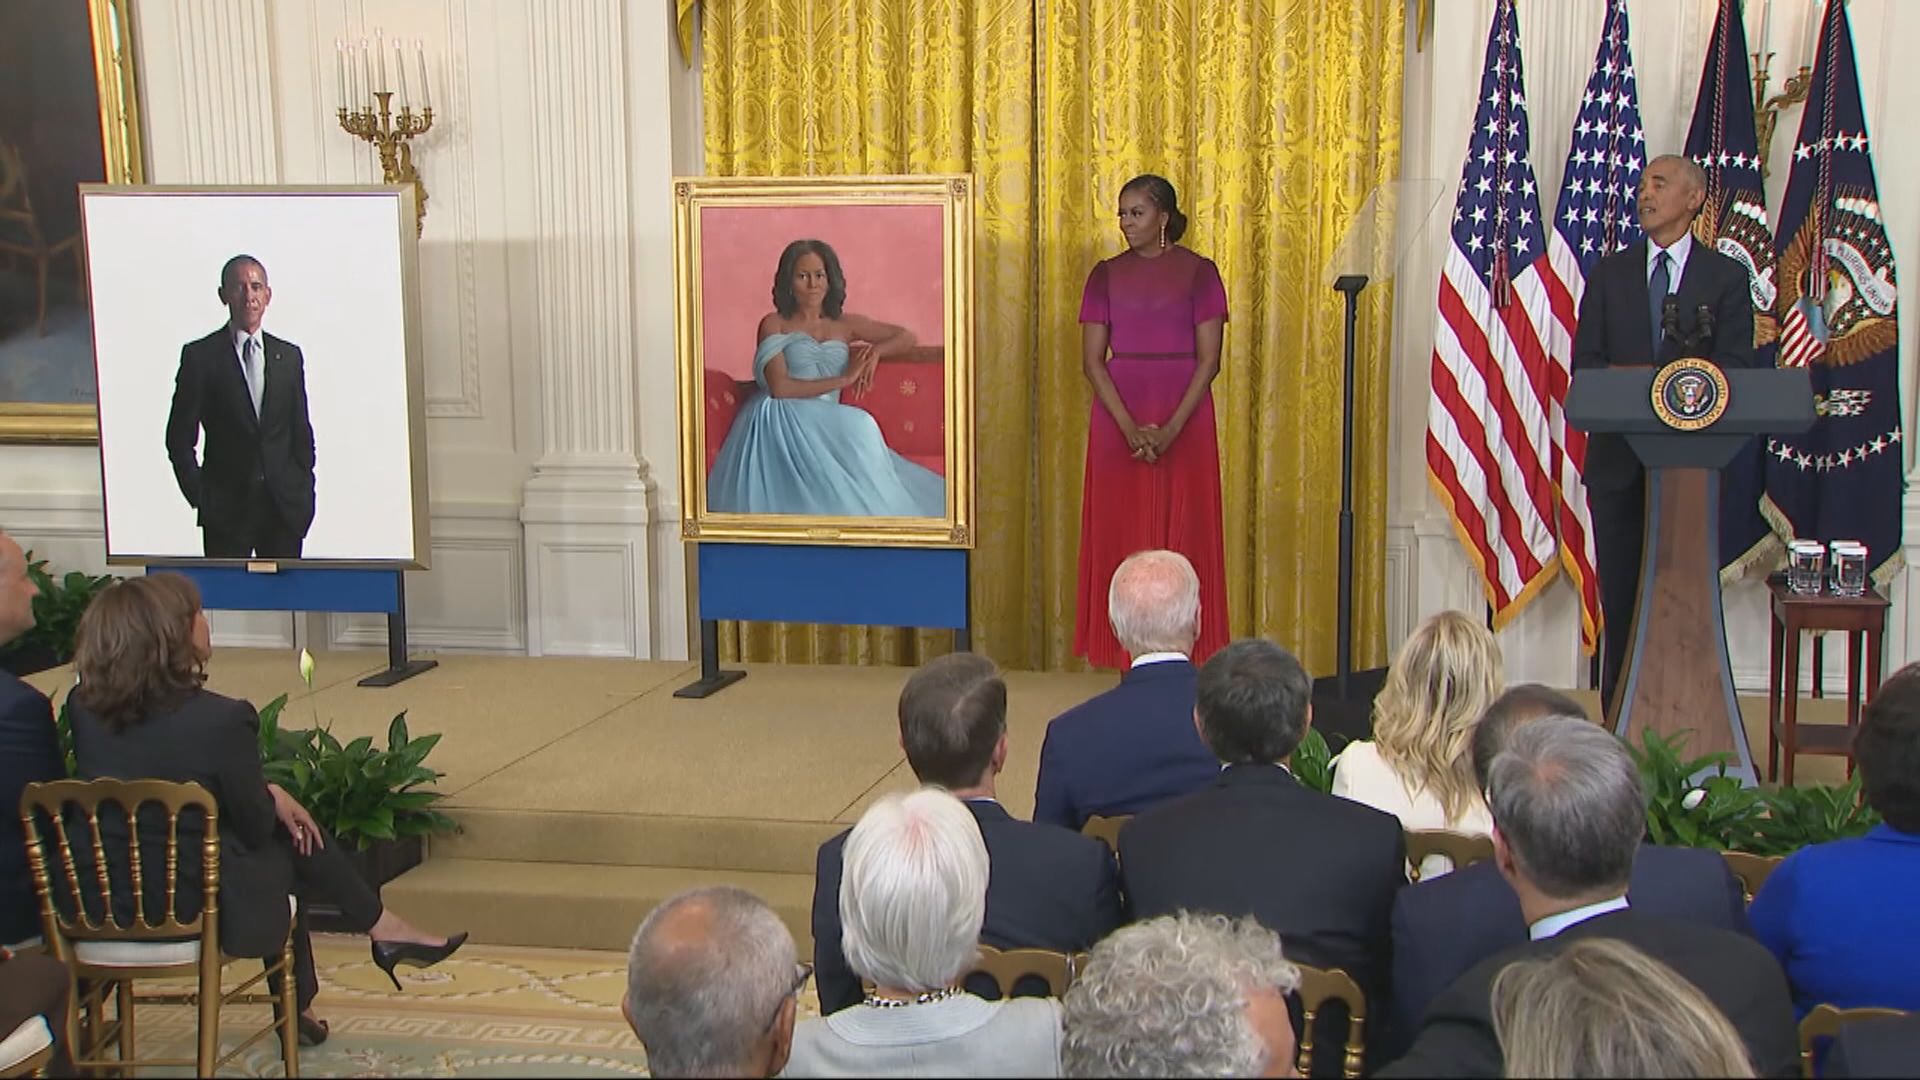 【環球薈報】奧巴馬伉儷首度重返白宮為官方肖像畫揭幕